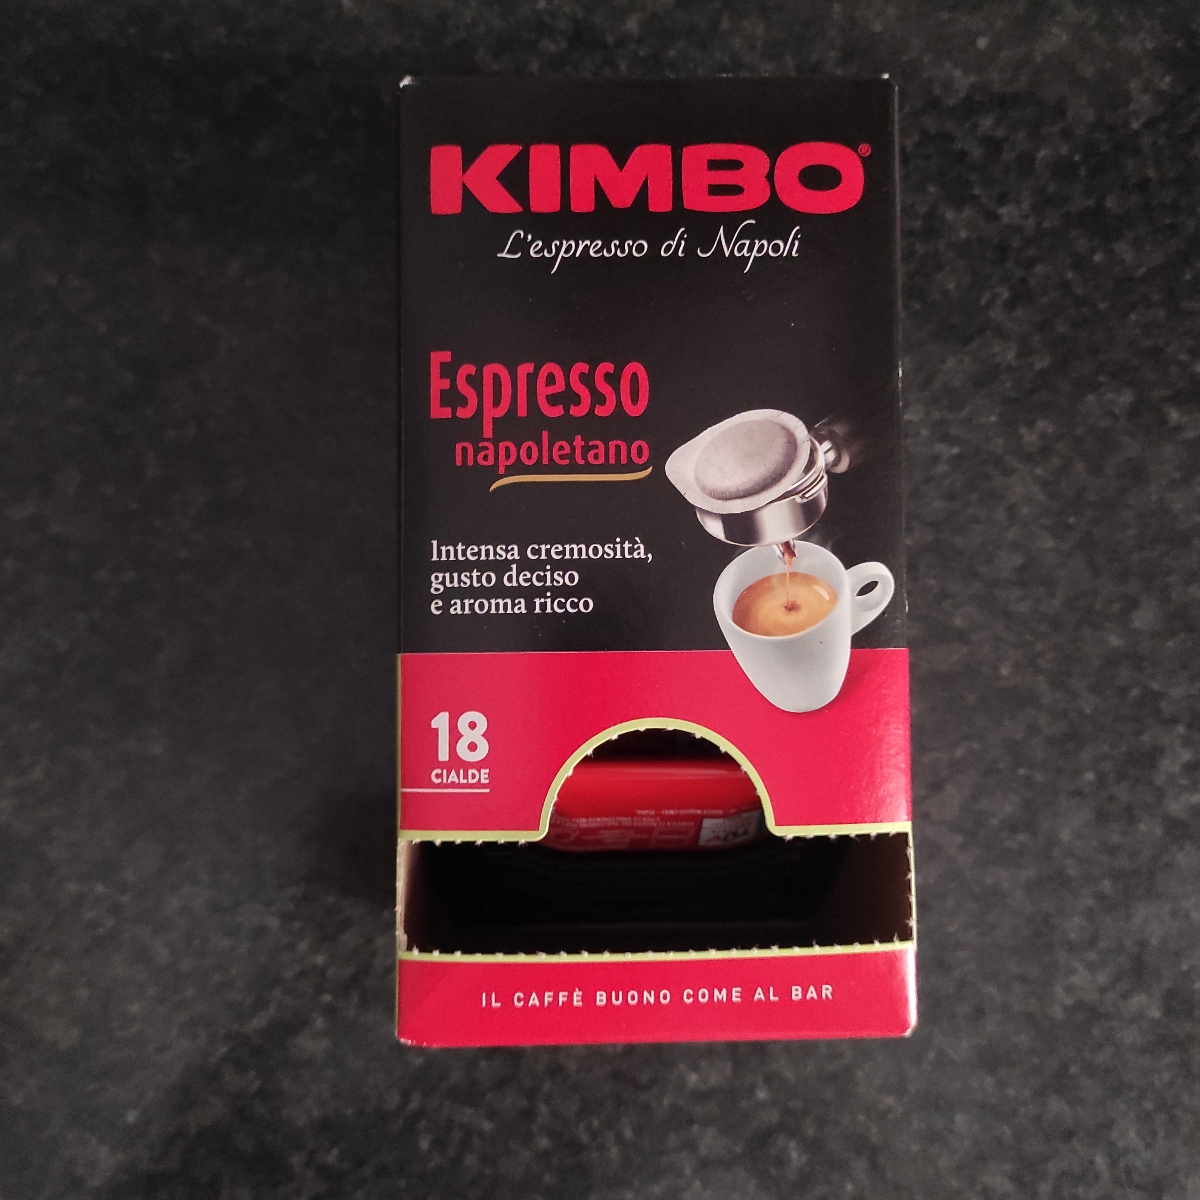 Kimbo Espresso napoletano Review